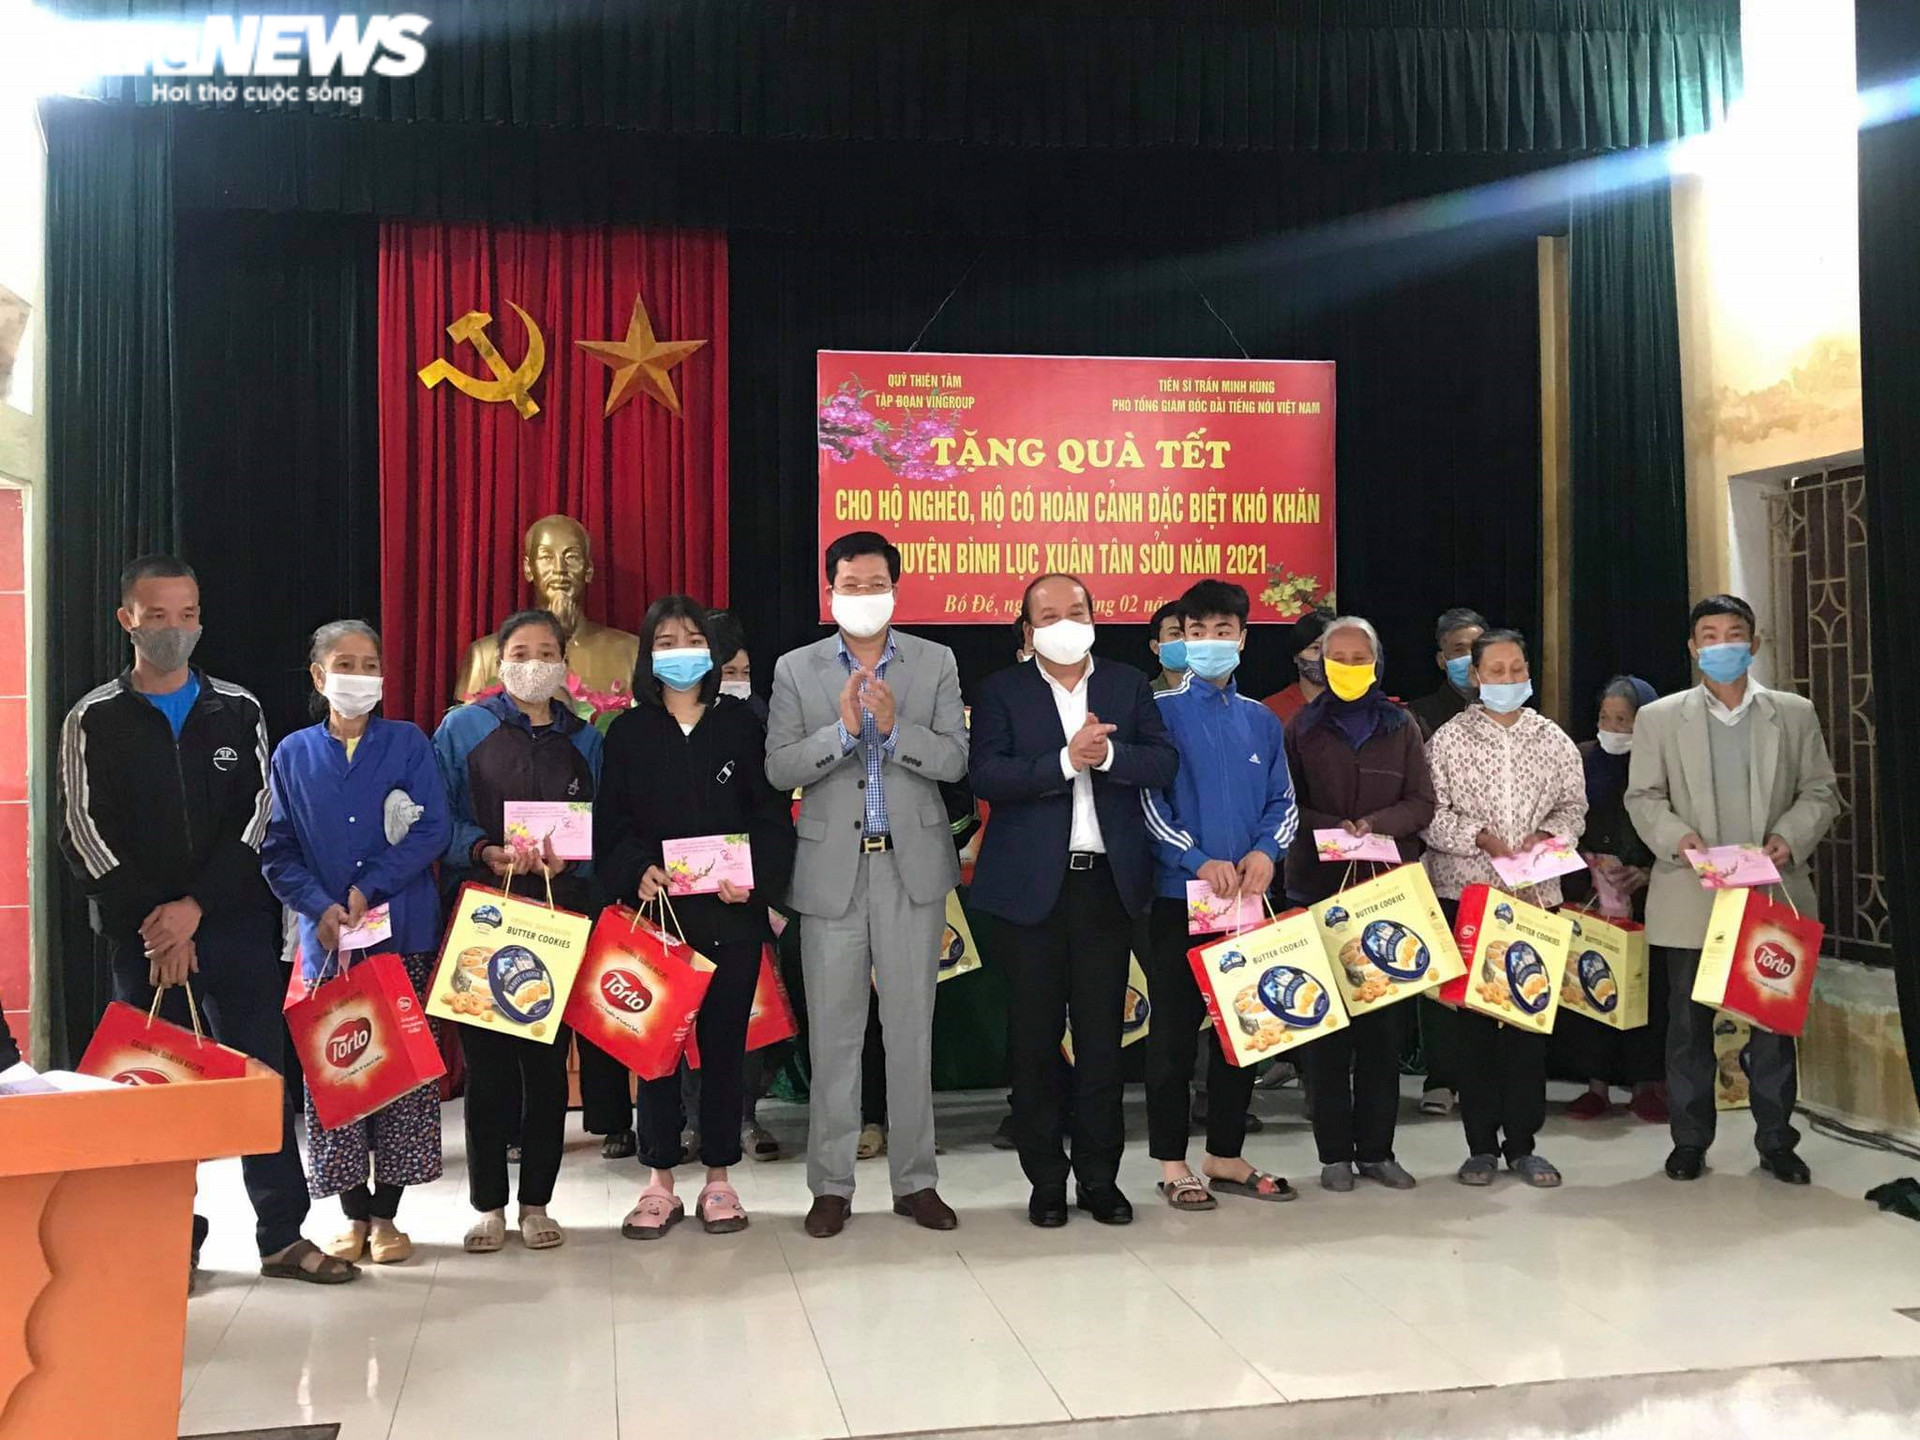 Đài Tiếng nói Việt Nam và Vingroup trao 300 suất quà Tết cho hộ nghèo ở Hà Nam - 1